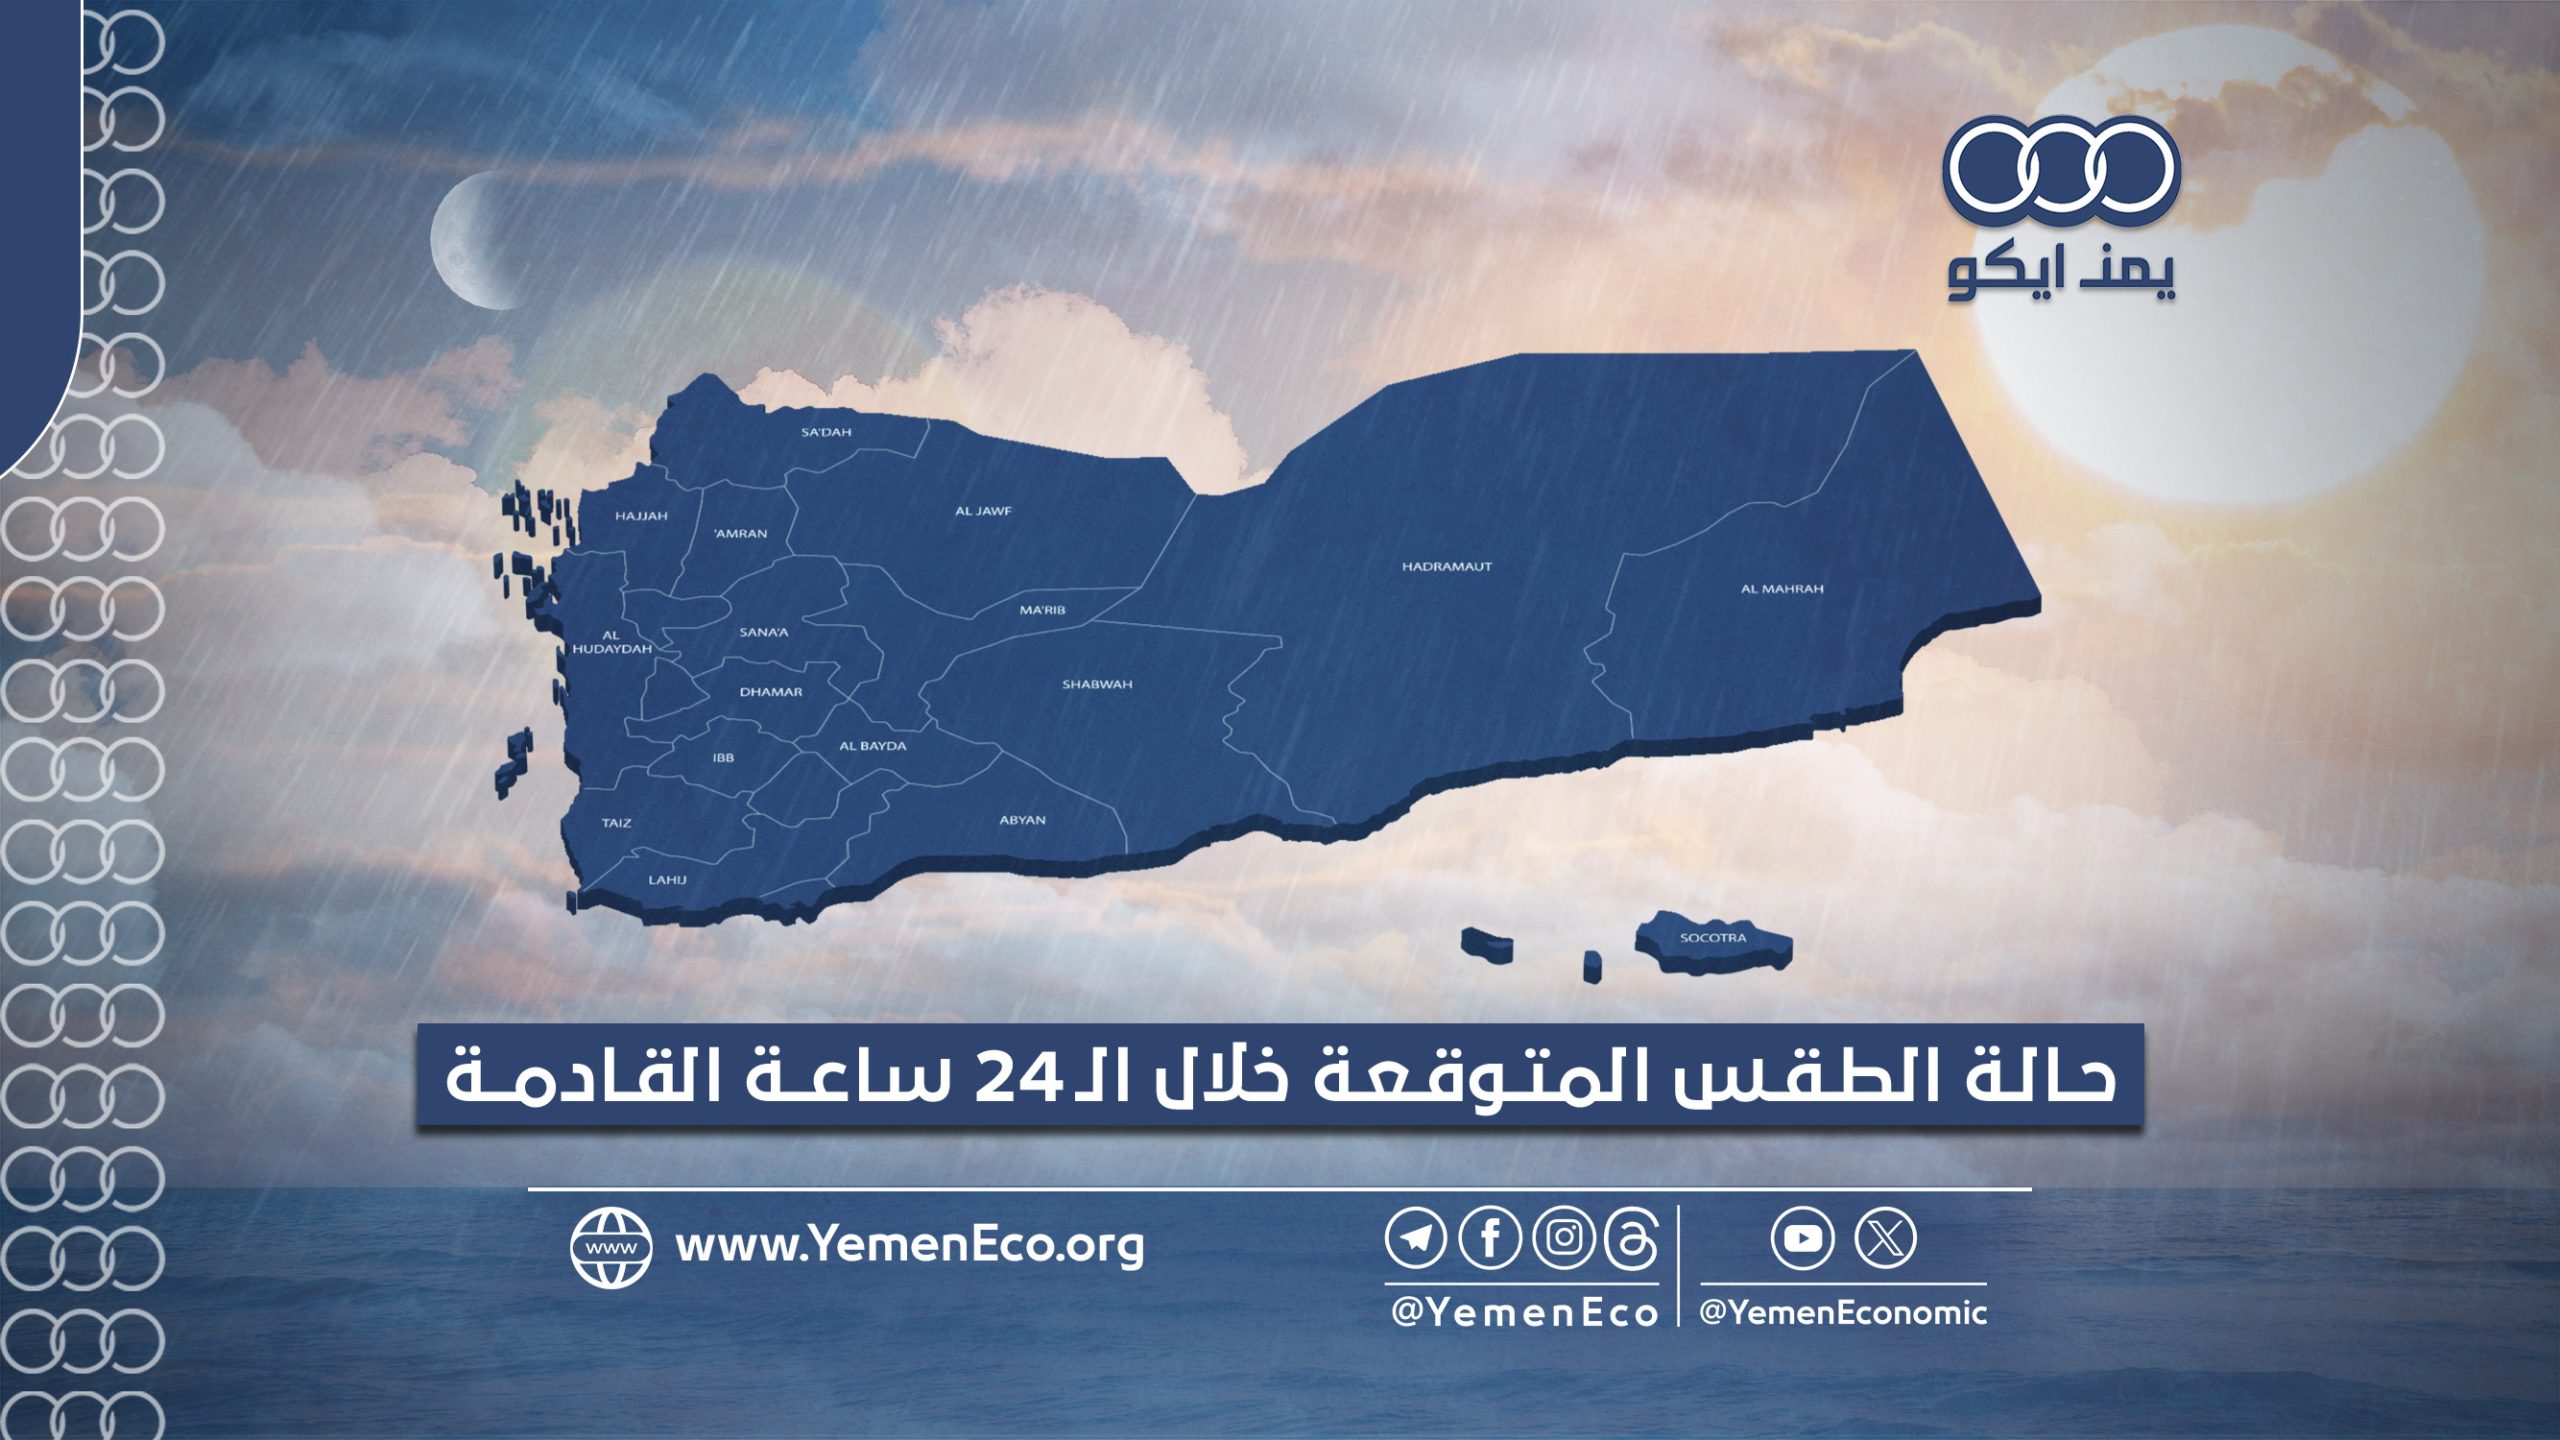 أجواء صحوة إلى غائمة جزئياً مع هطول أمطار رعدية في المحافظات اليمنية